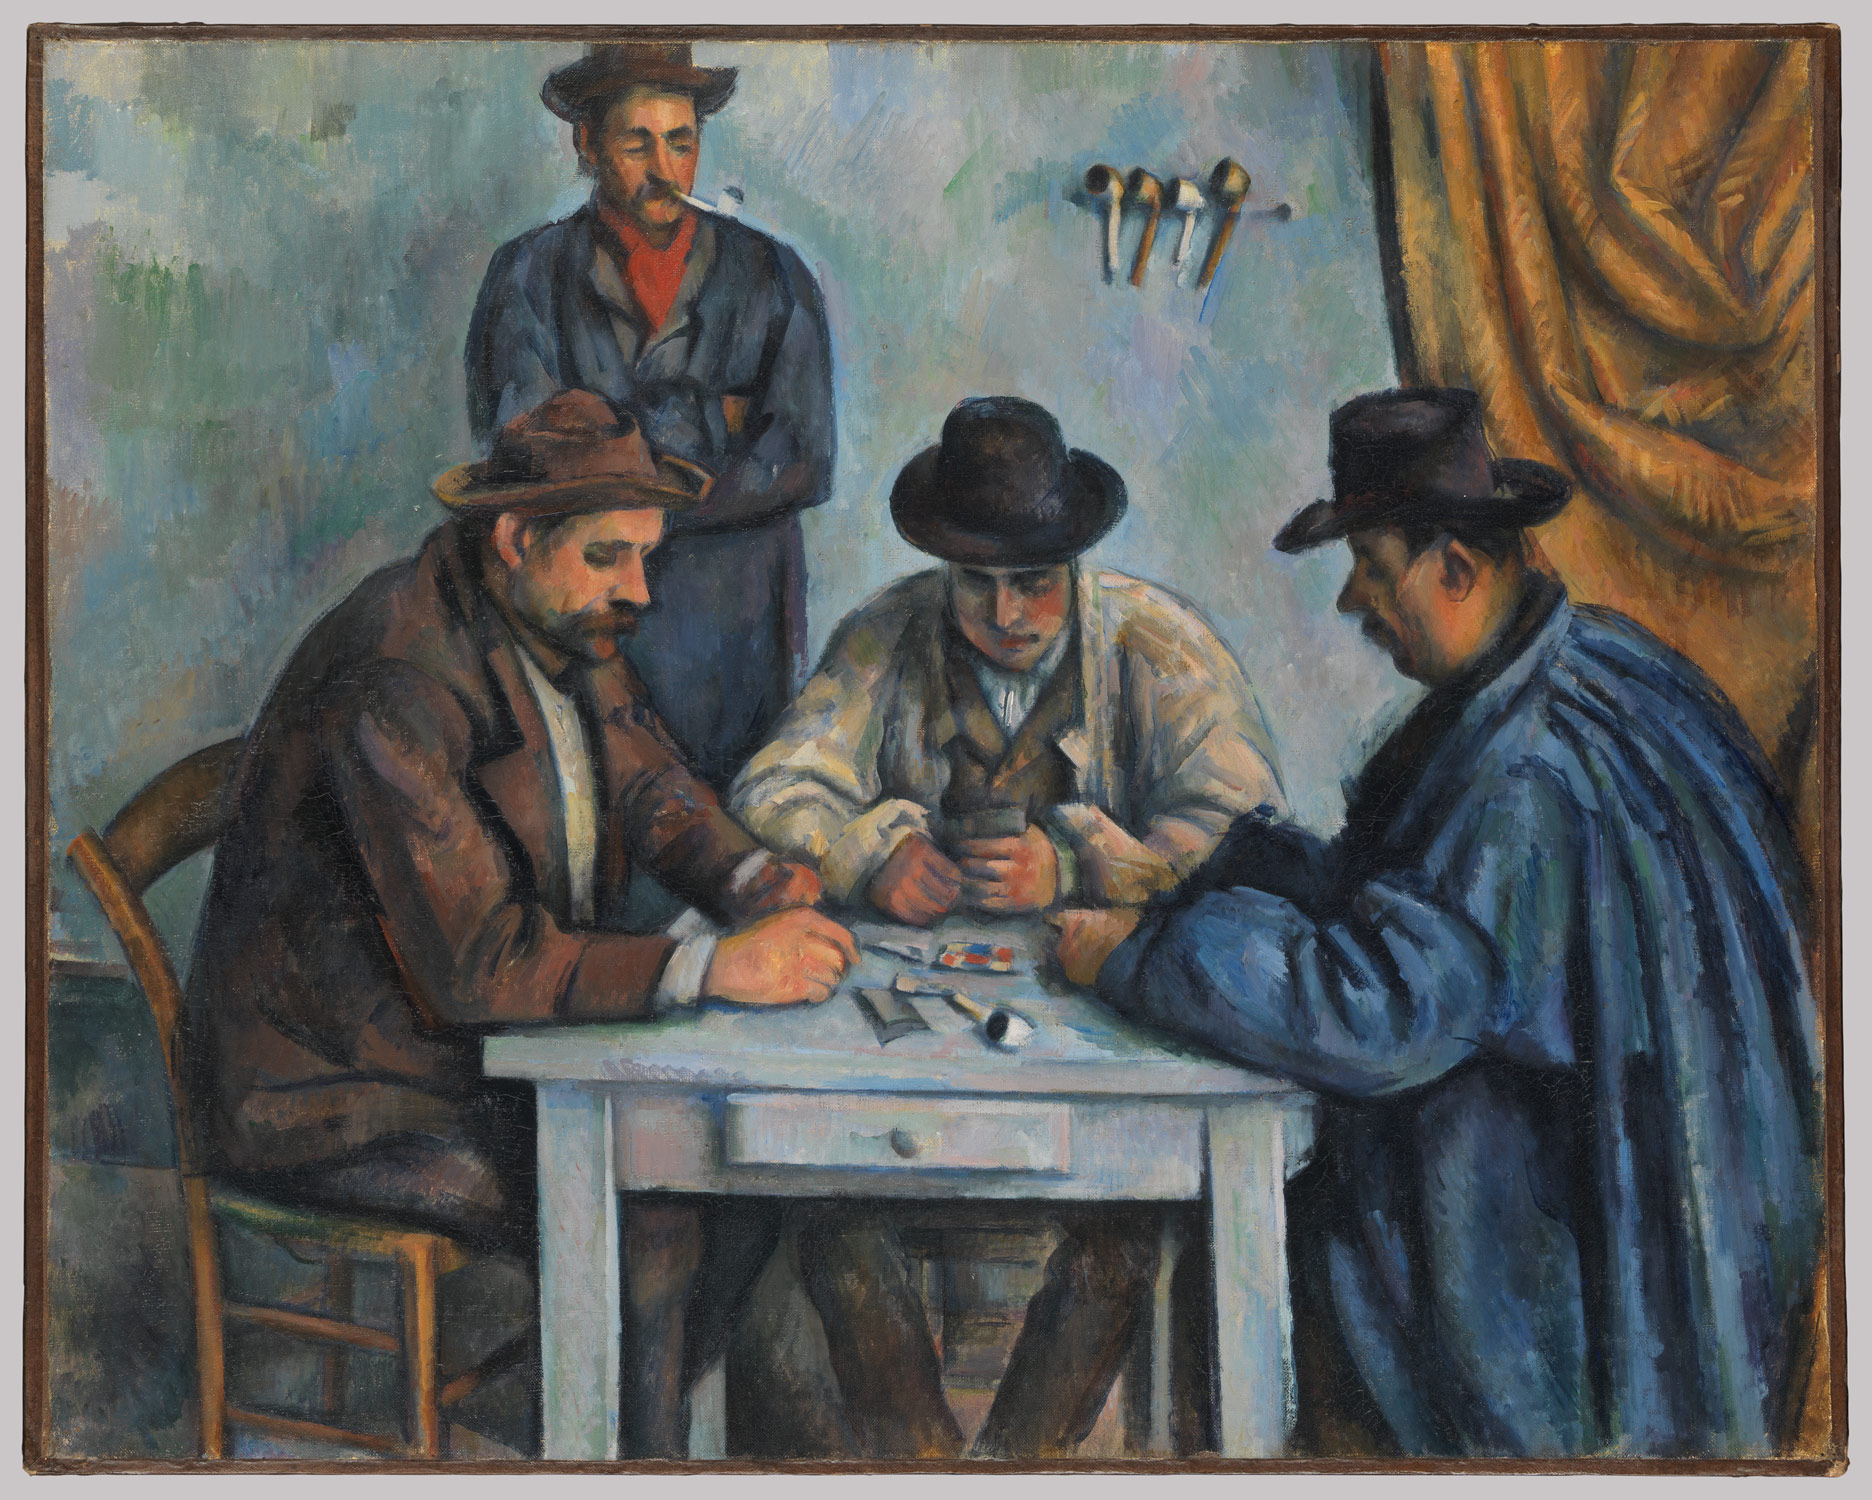 Giocatori di carte by Paul Cézanne - ca.1894-1895 - 47,5 × 57 cm Musée d'Orsay